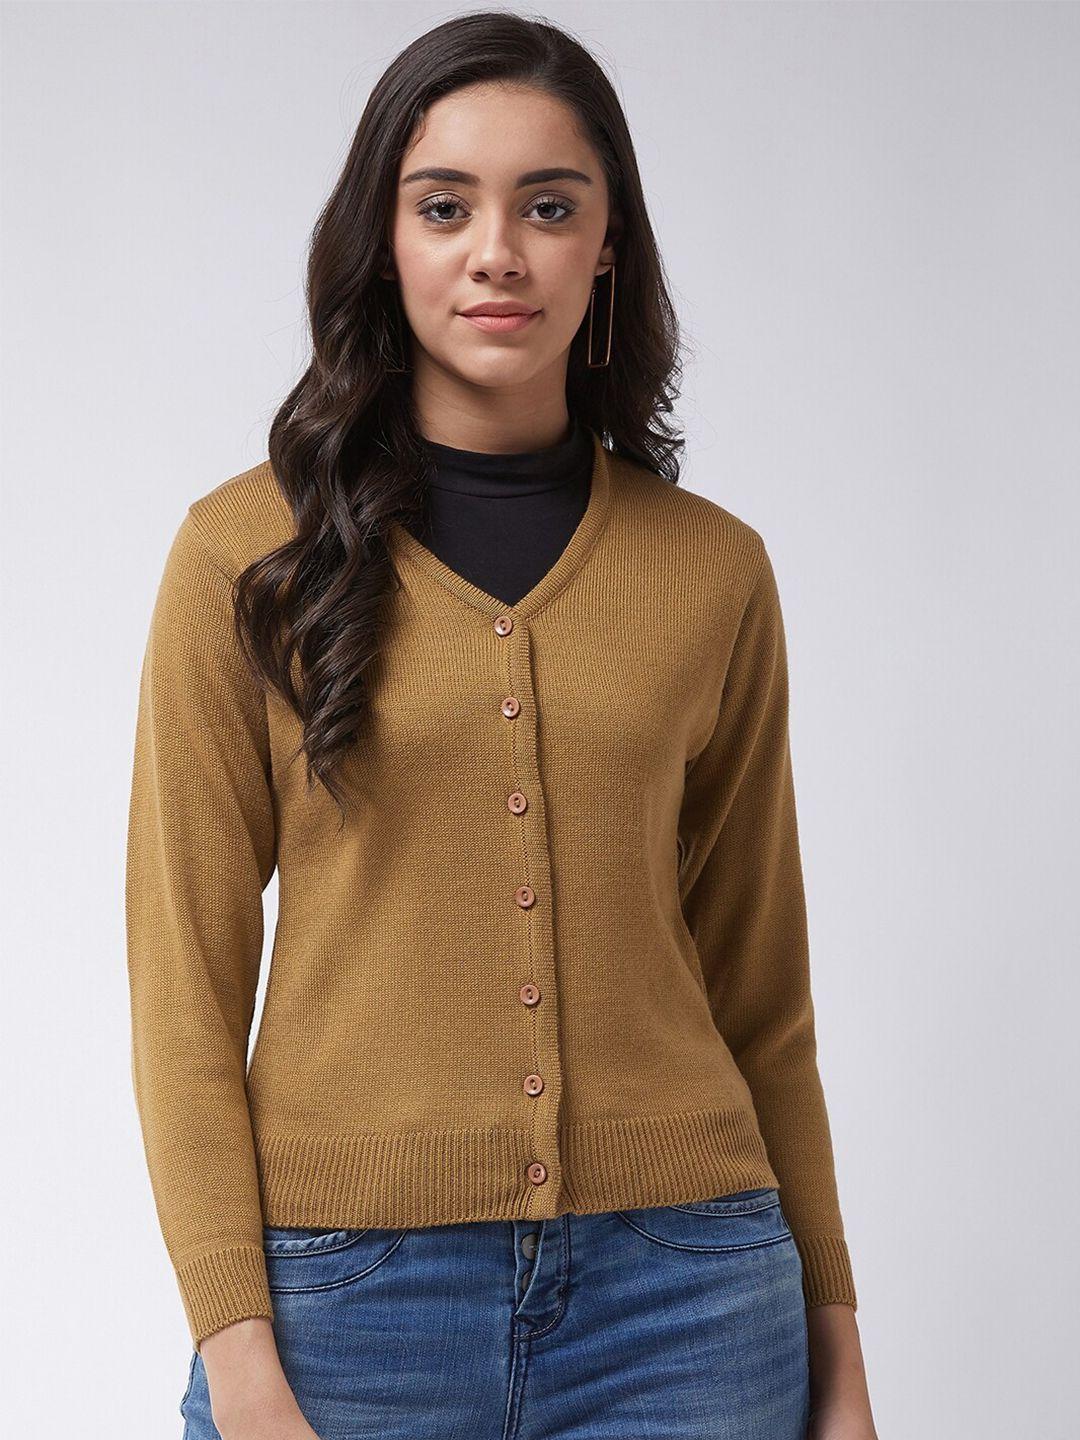 modeve-women-beige-cardigan-sweater